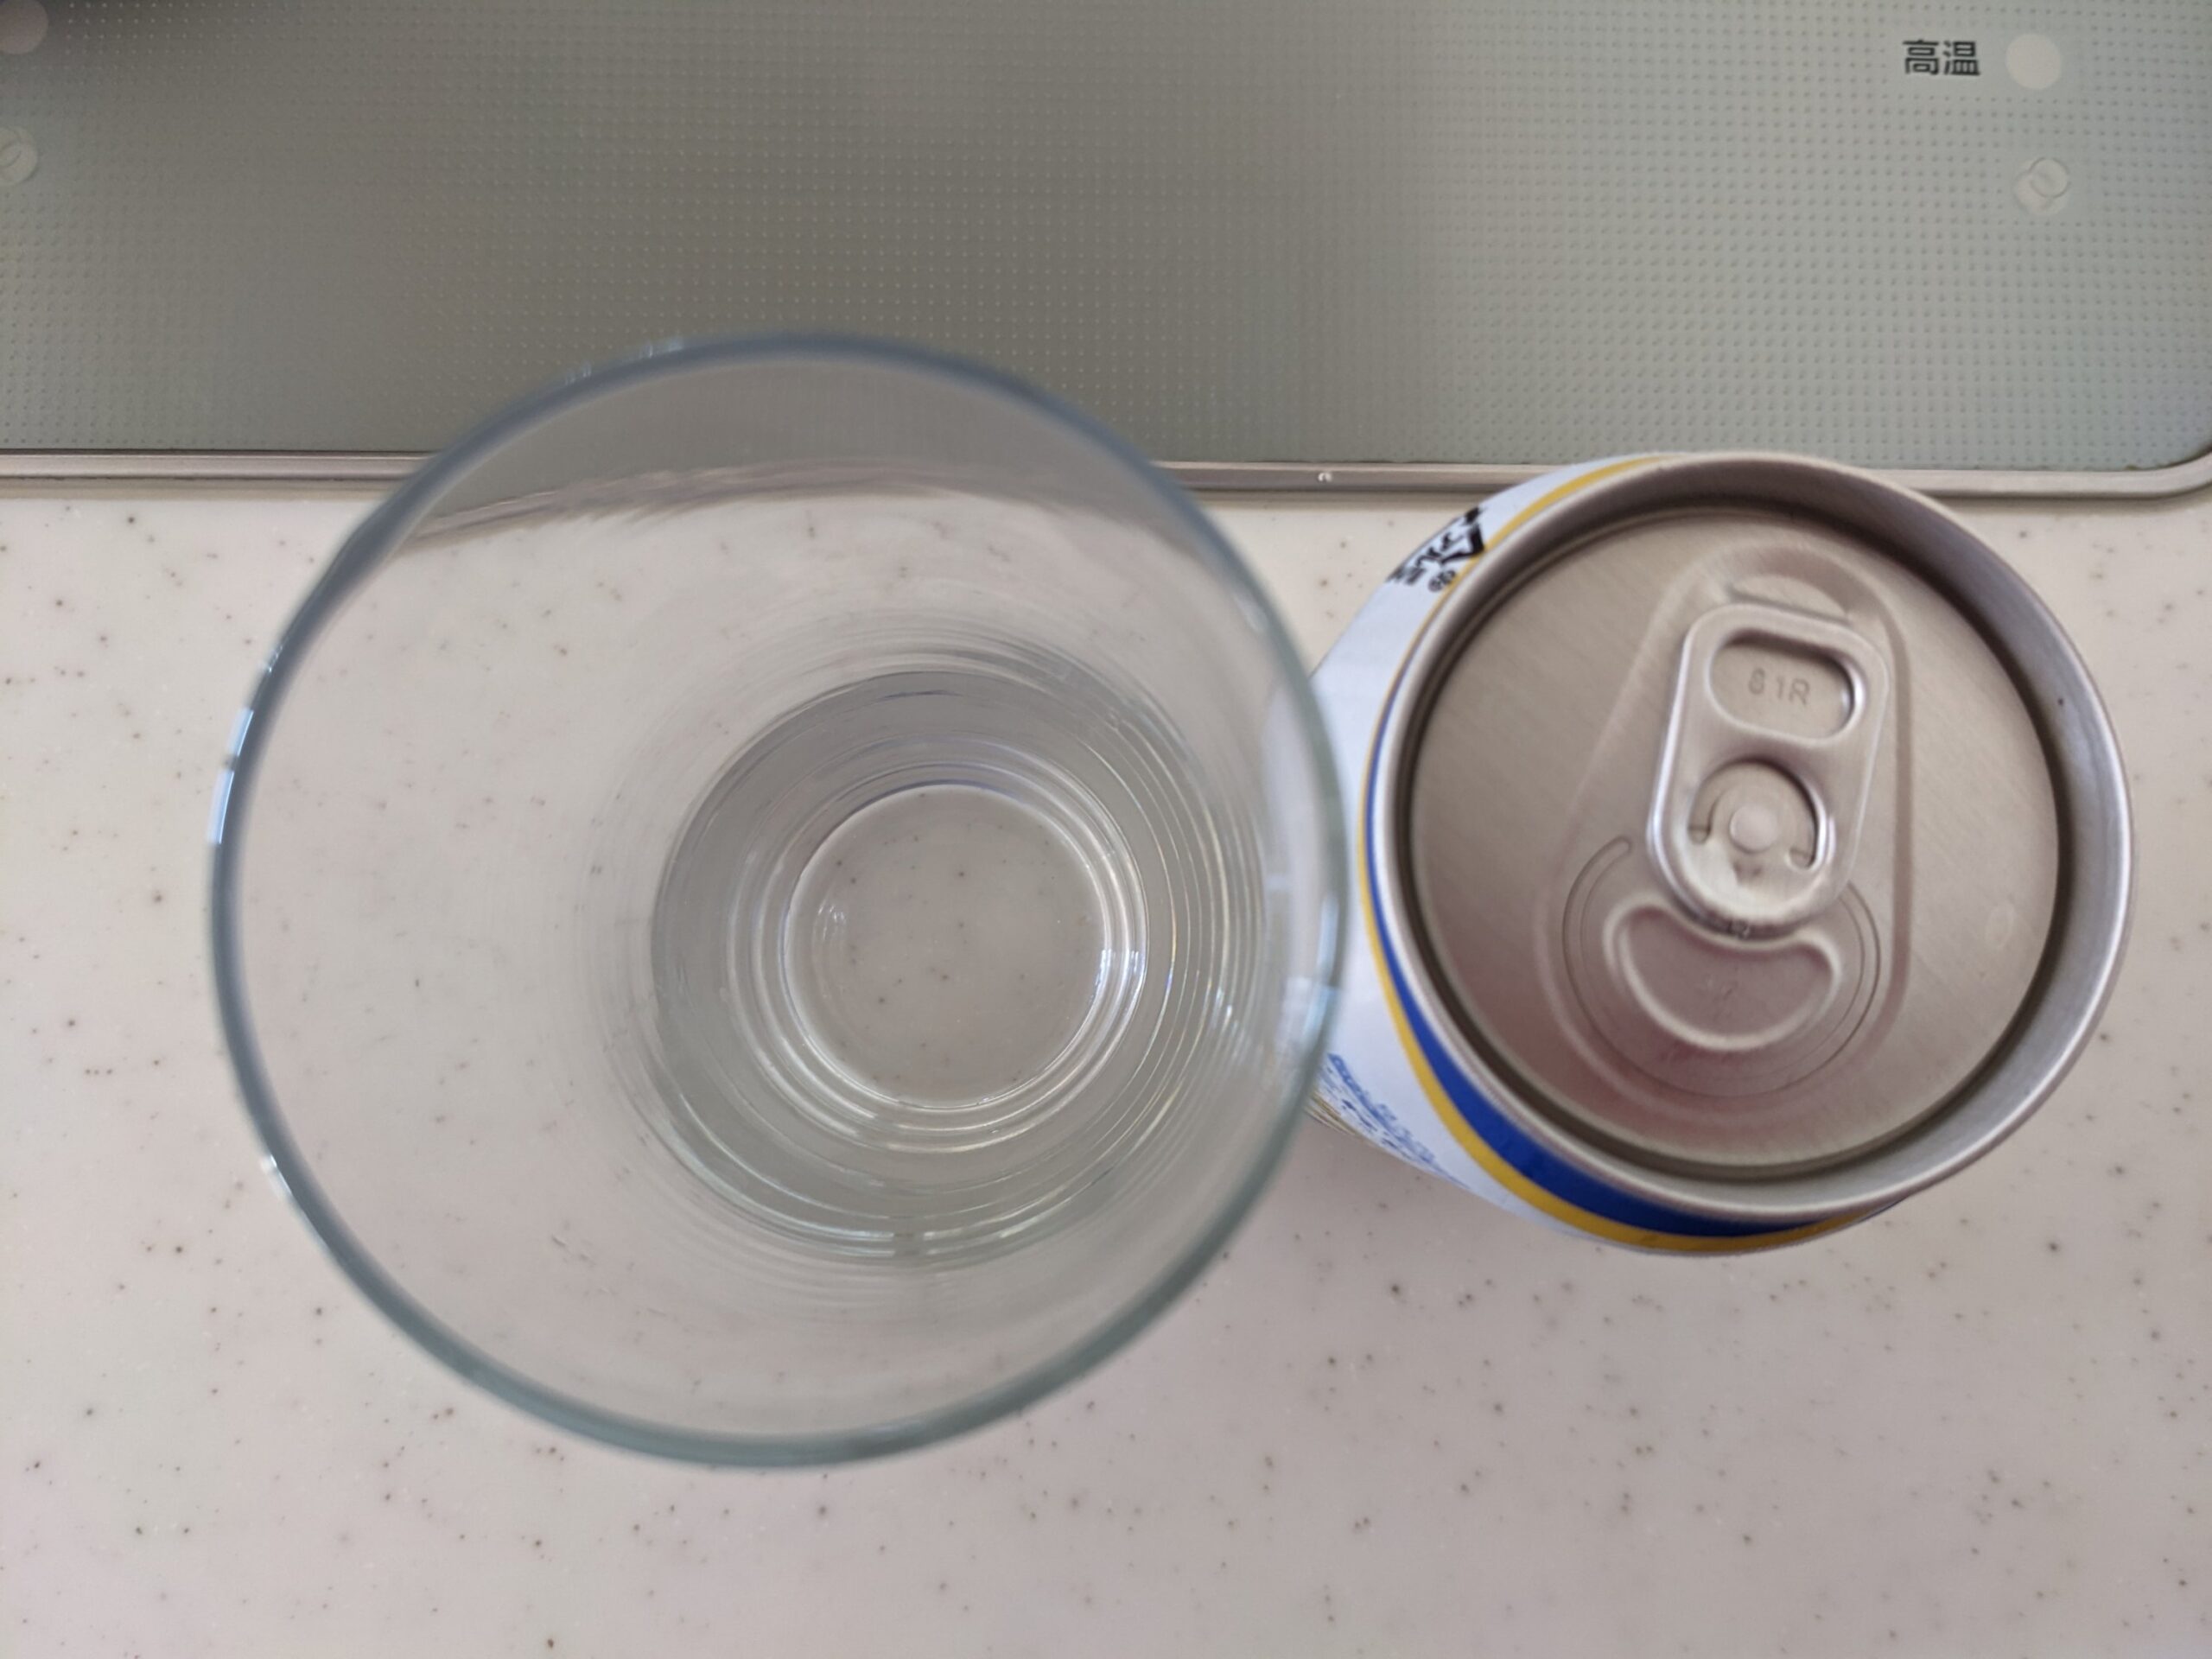 上から見たグラスと缶の「ビアレスト（コスモス薬品PB）」